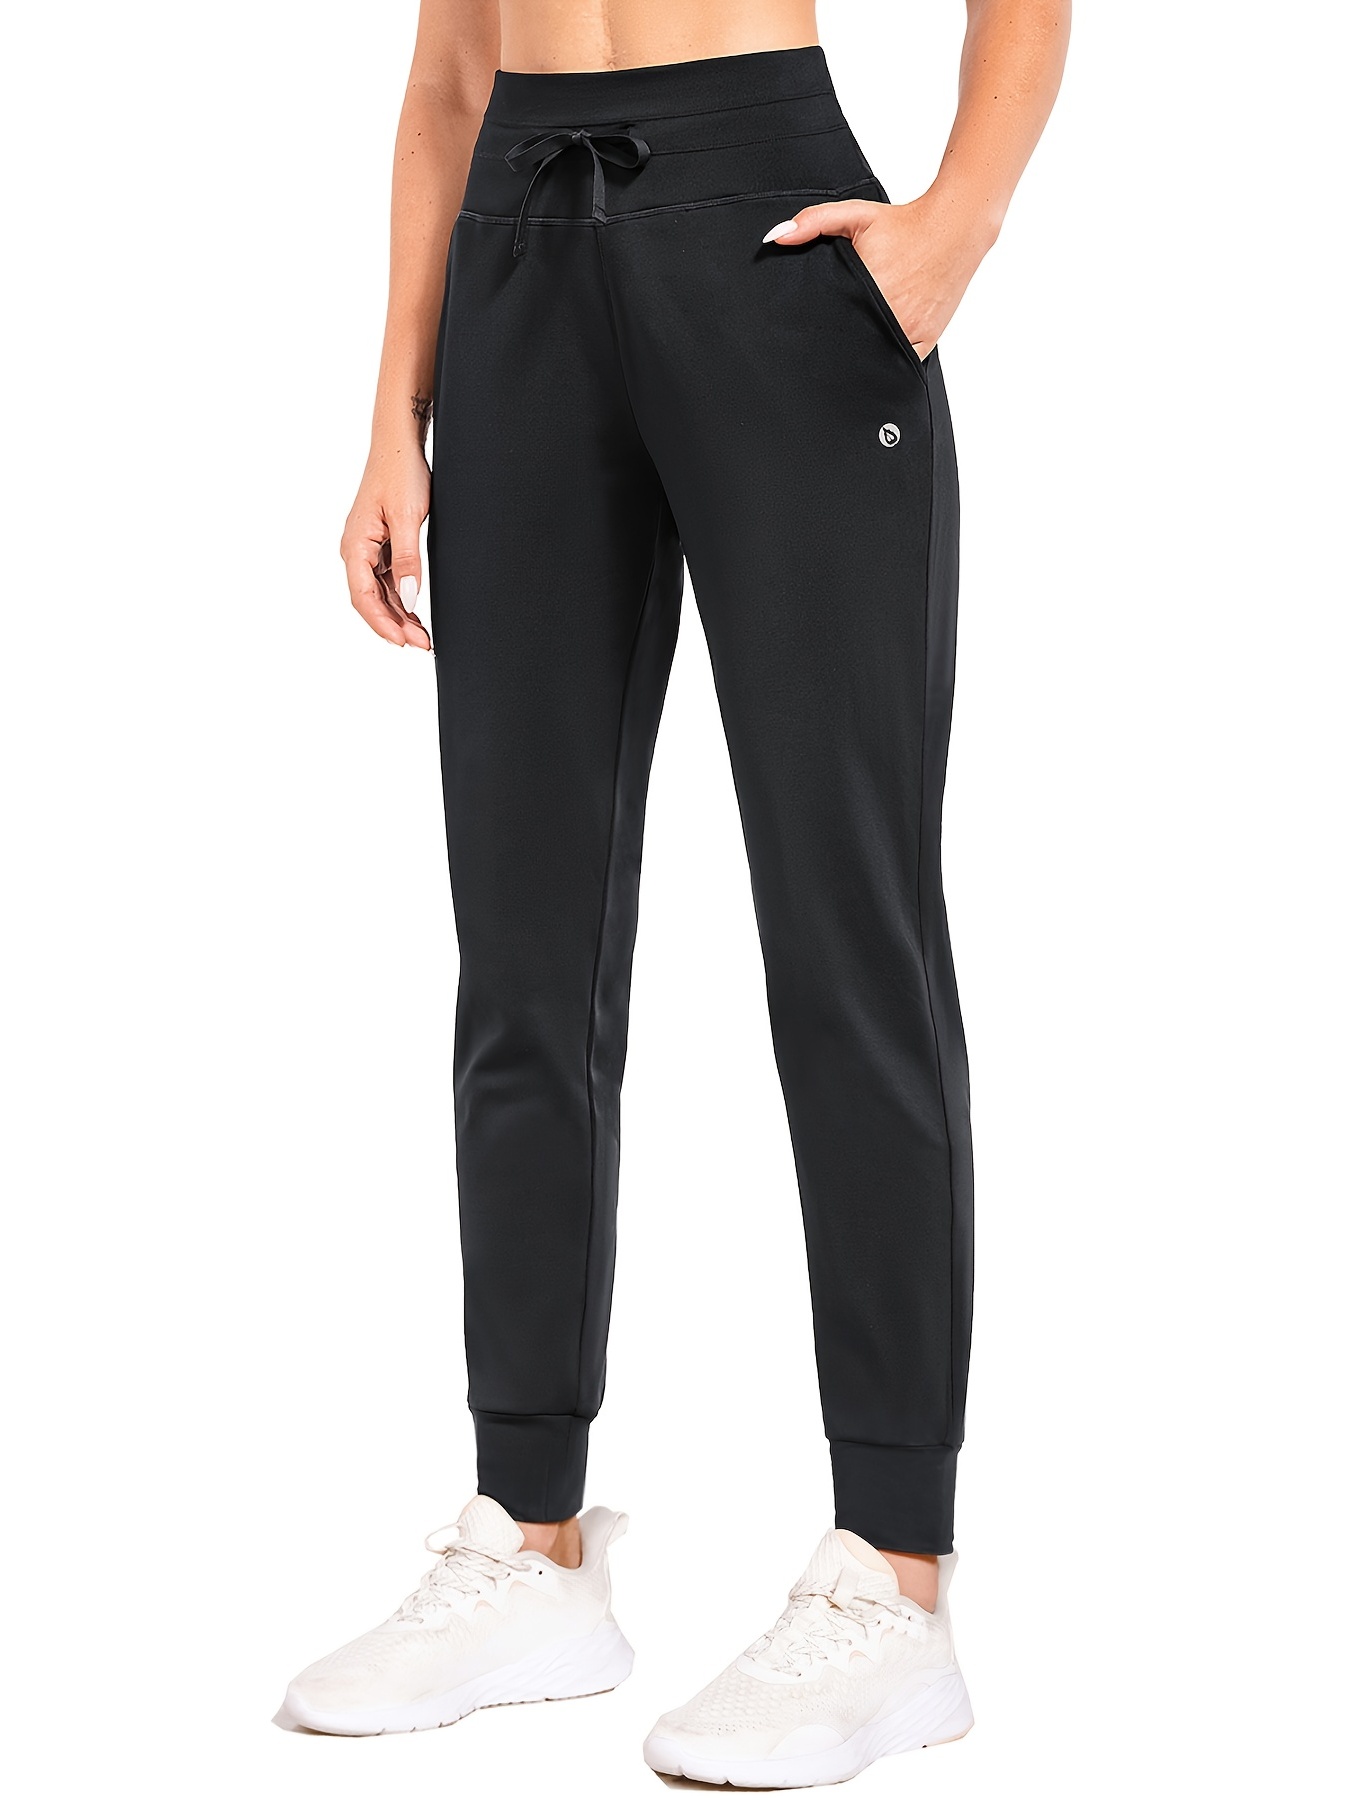 BALEAF Women's Zipper Pocket Track Pants: Athletic France